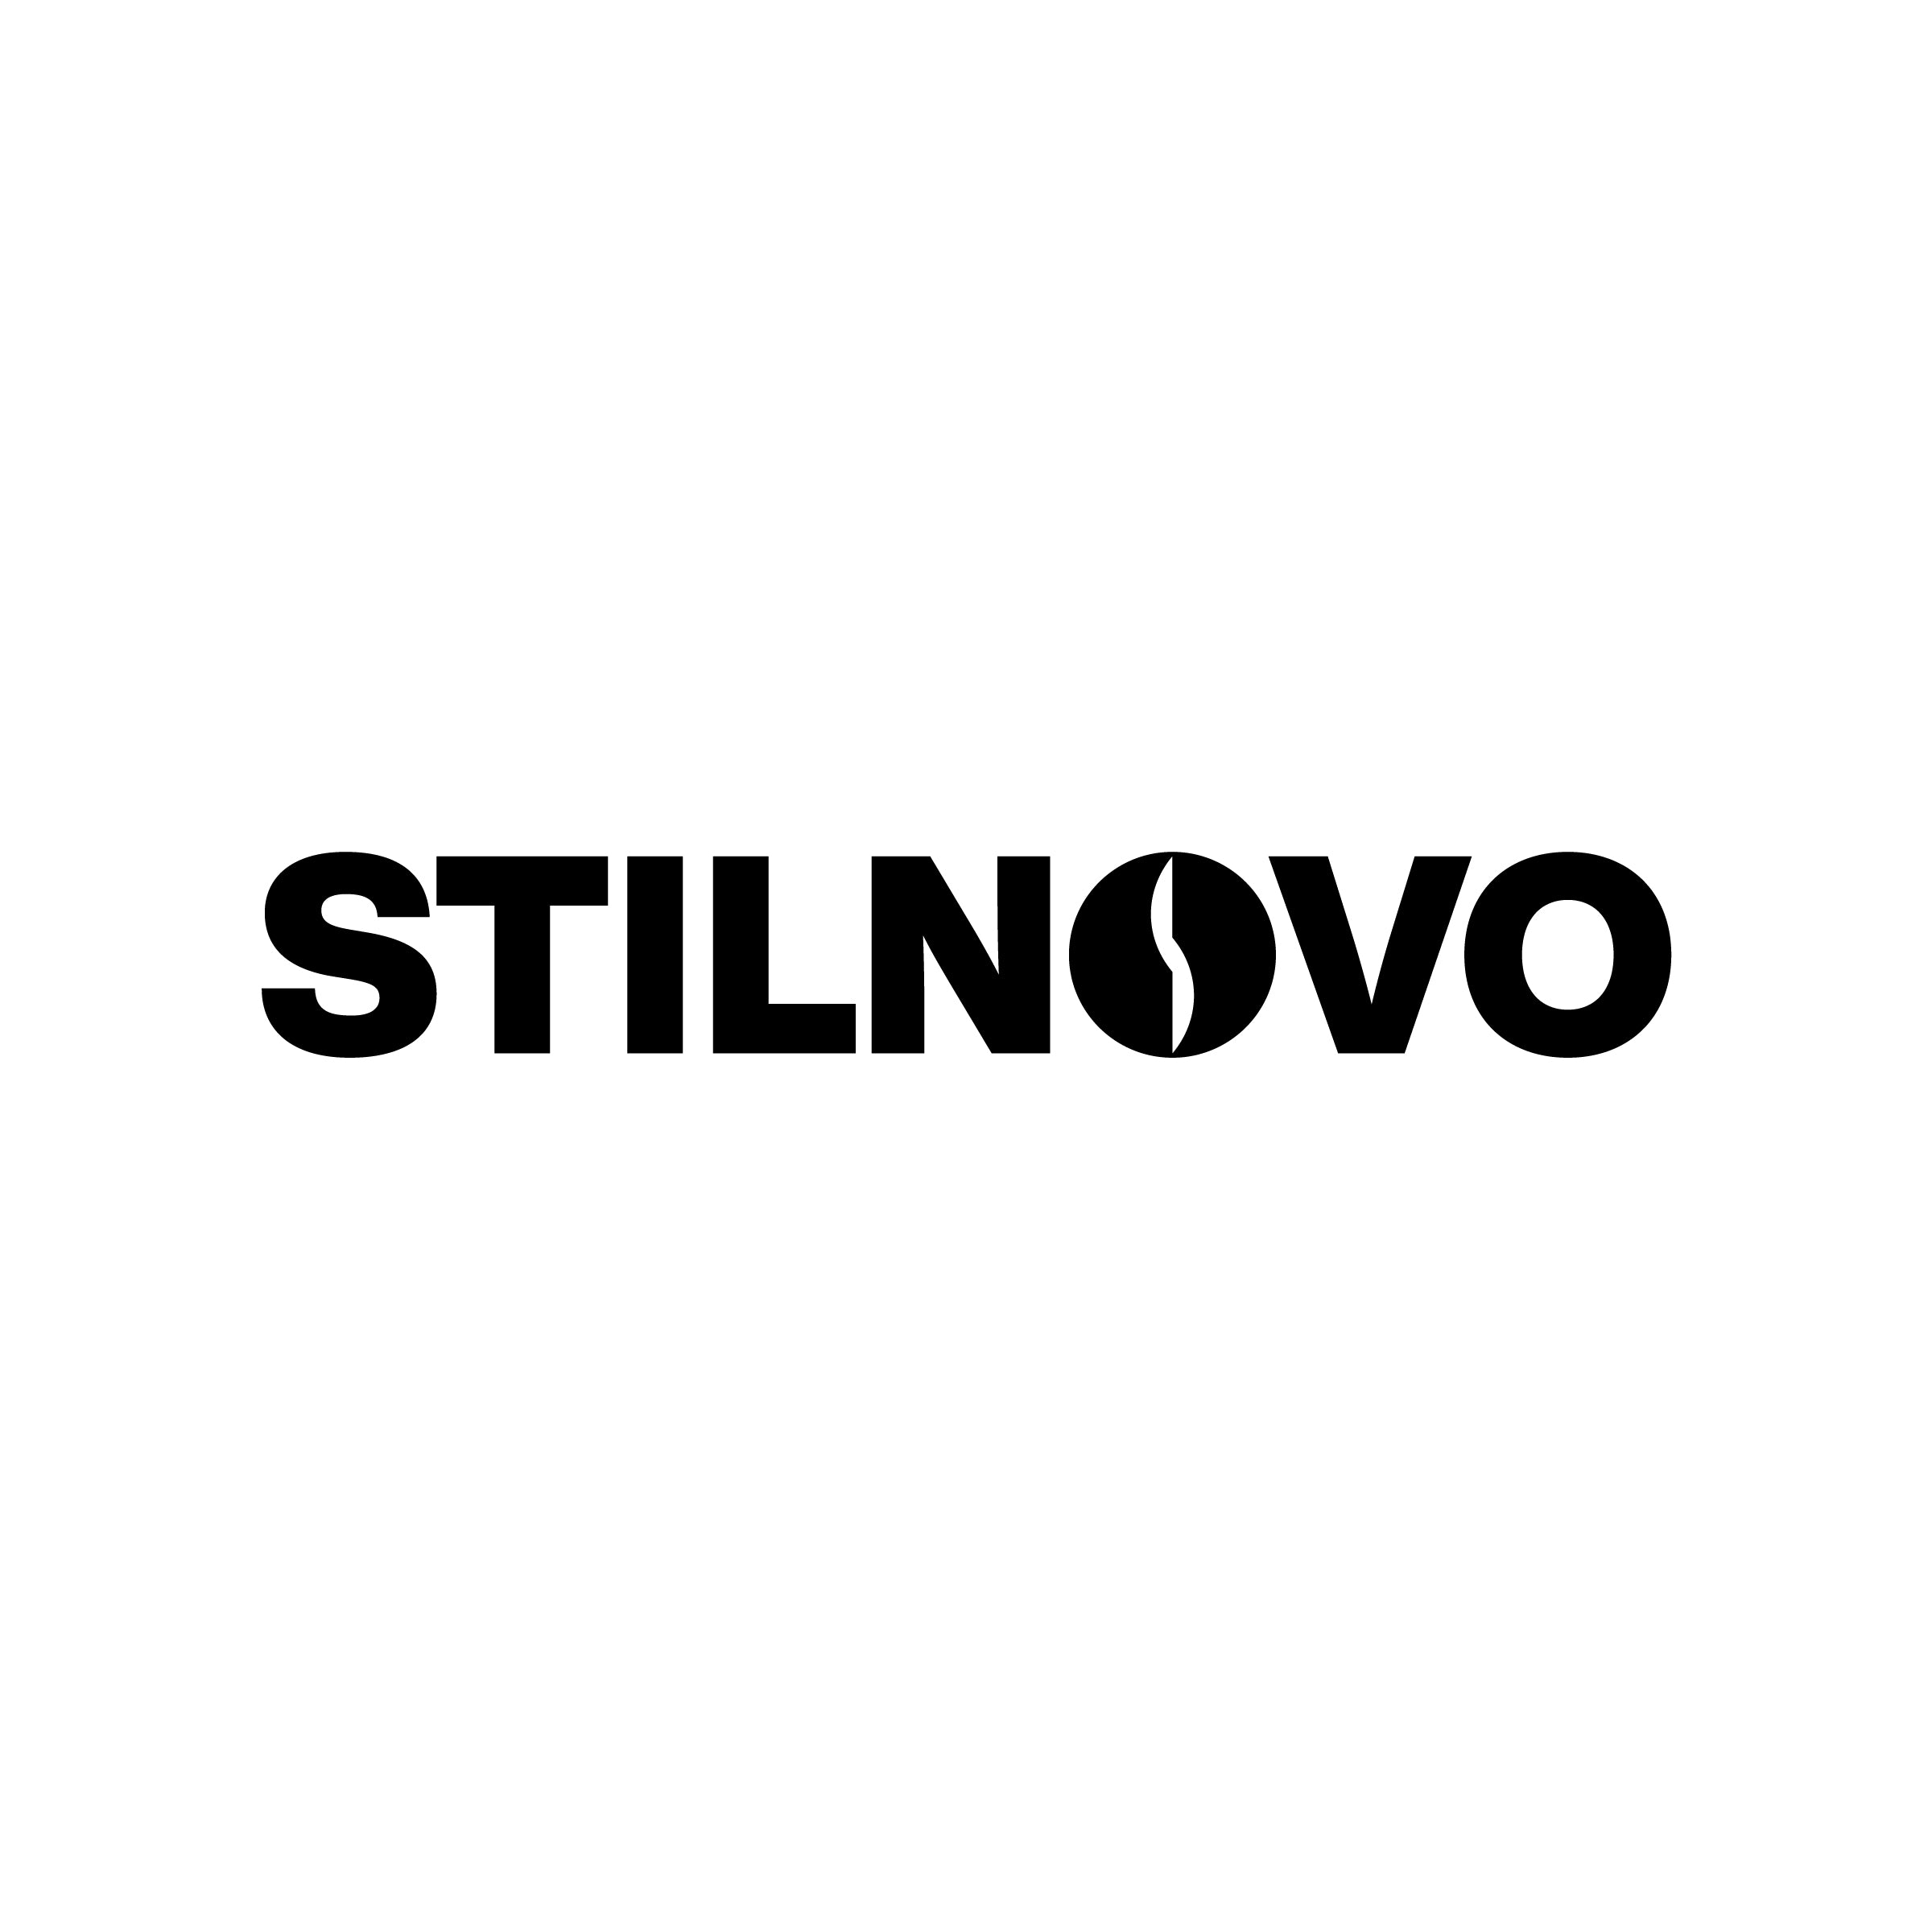 Stilnovo - Design Italy